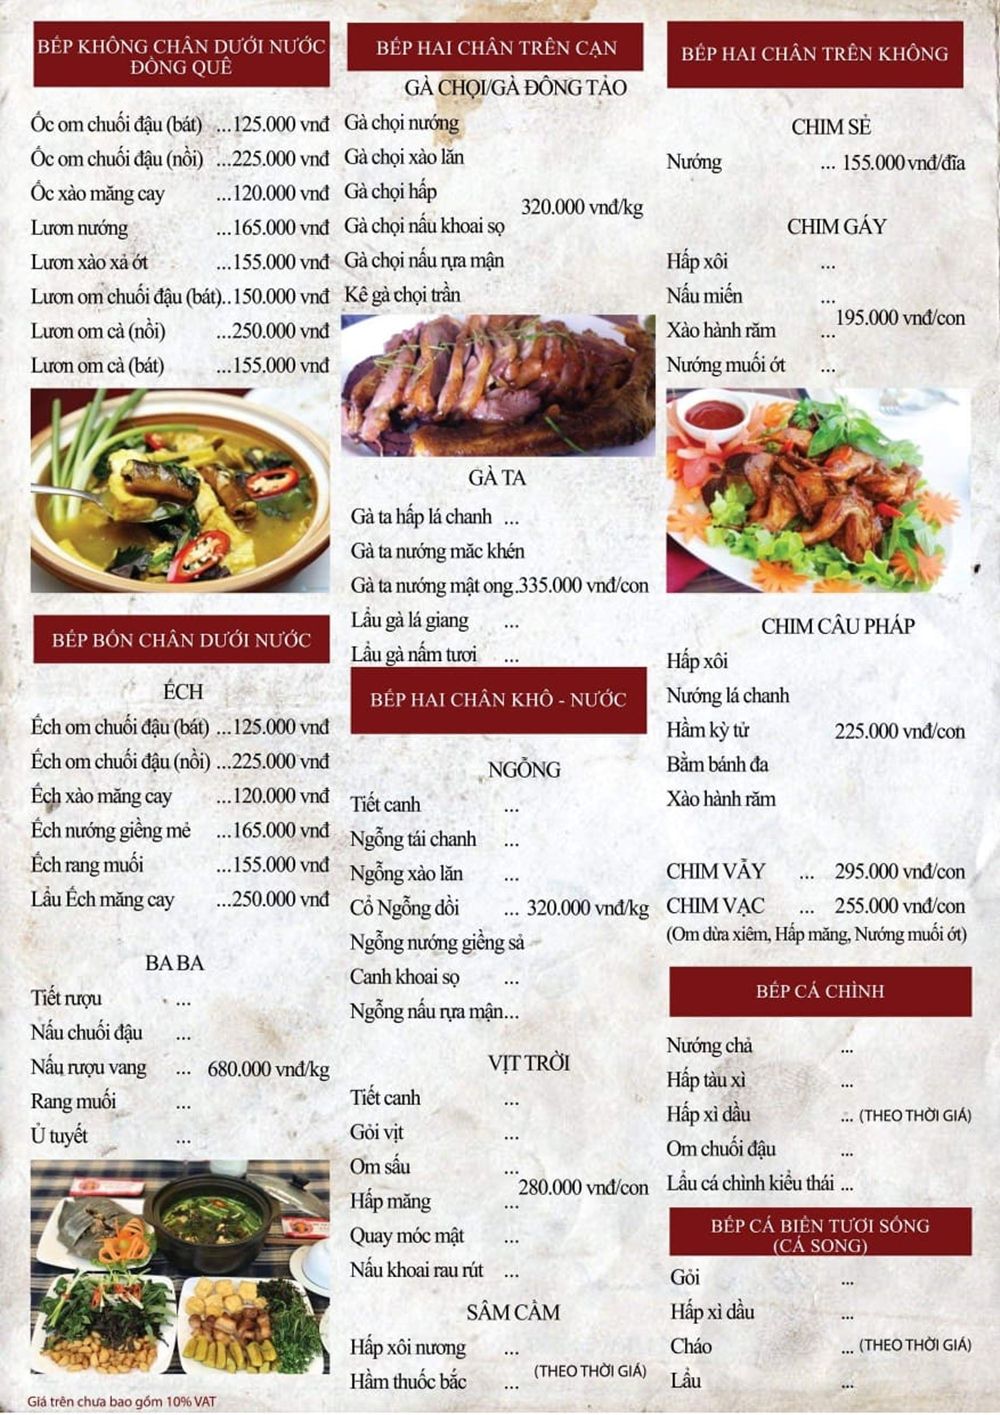   Menu đa dạng món ăn và loại bếp tại Bò tơ Tây Ninh Tài Sanh